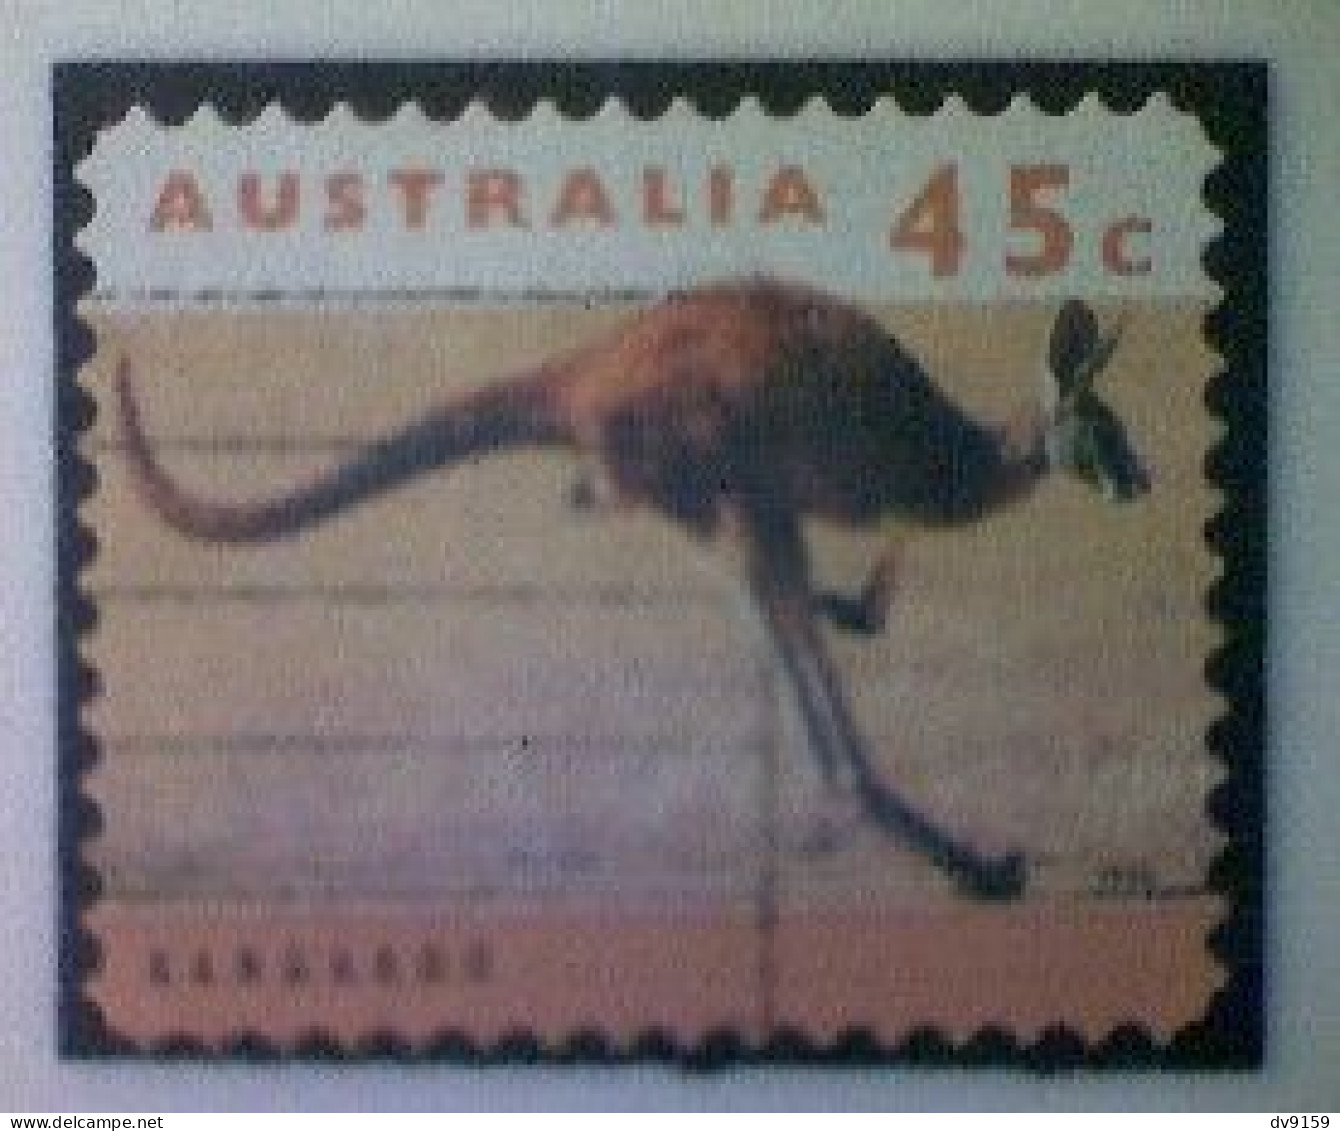 Australia, Scott #1288, Used (o), 1994, Wildlife Series, Kangaroo, 45¢, Orange And Multicolored - Oblitérés